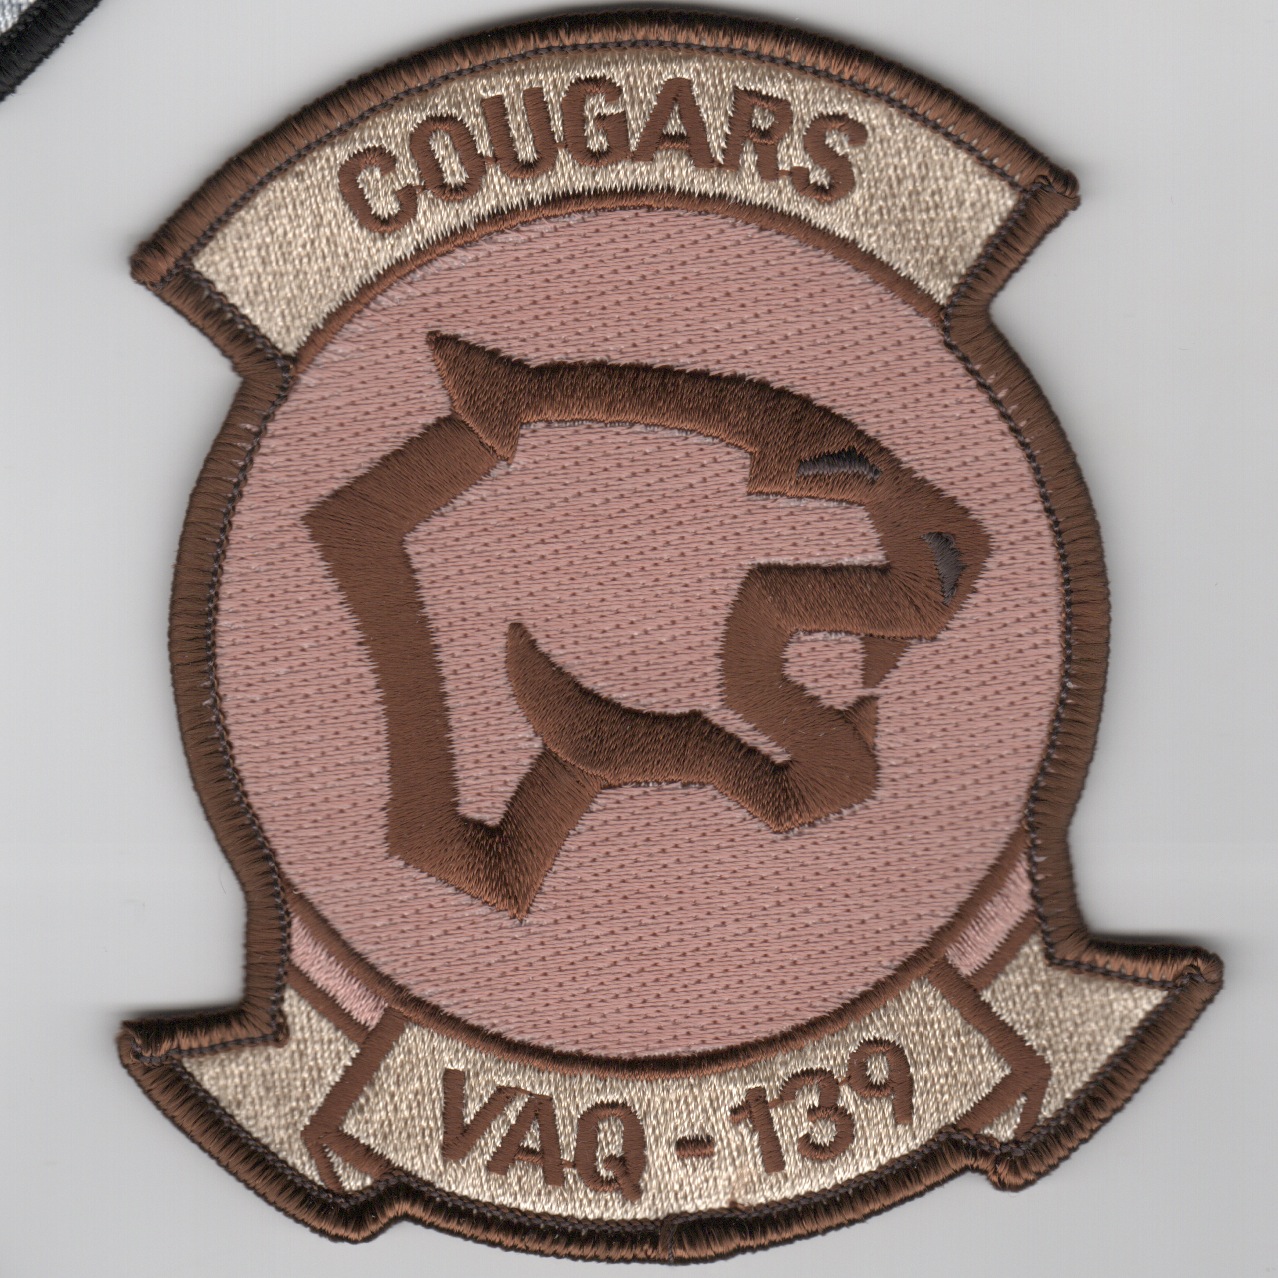 VAQ-139 Squadron Patch (Des)